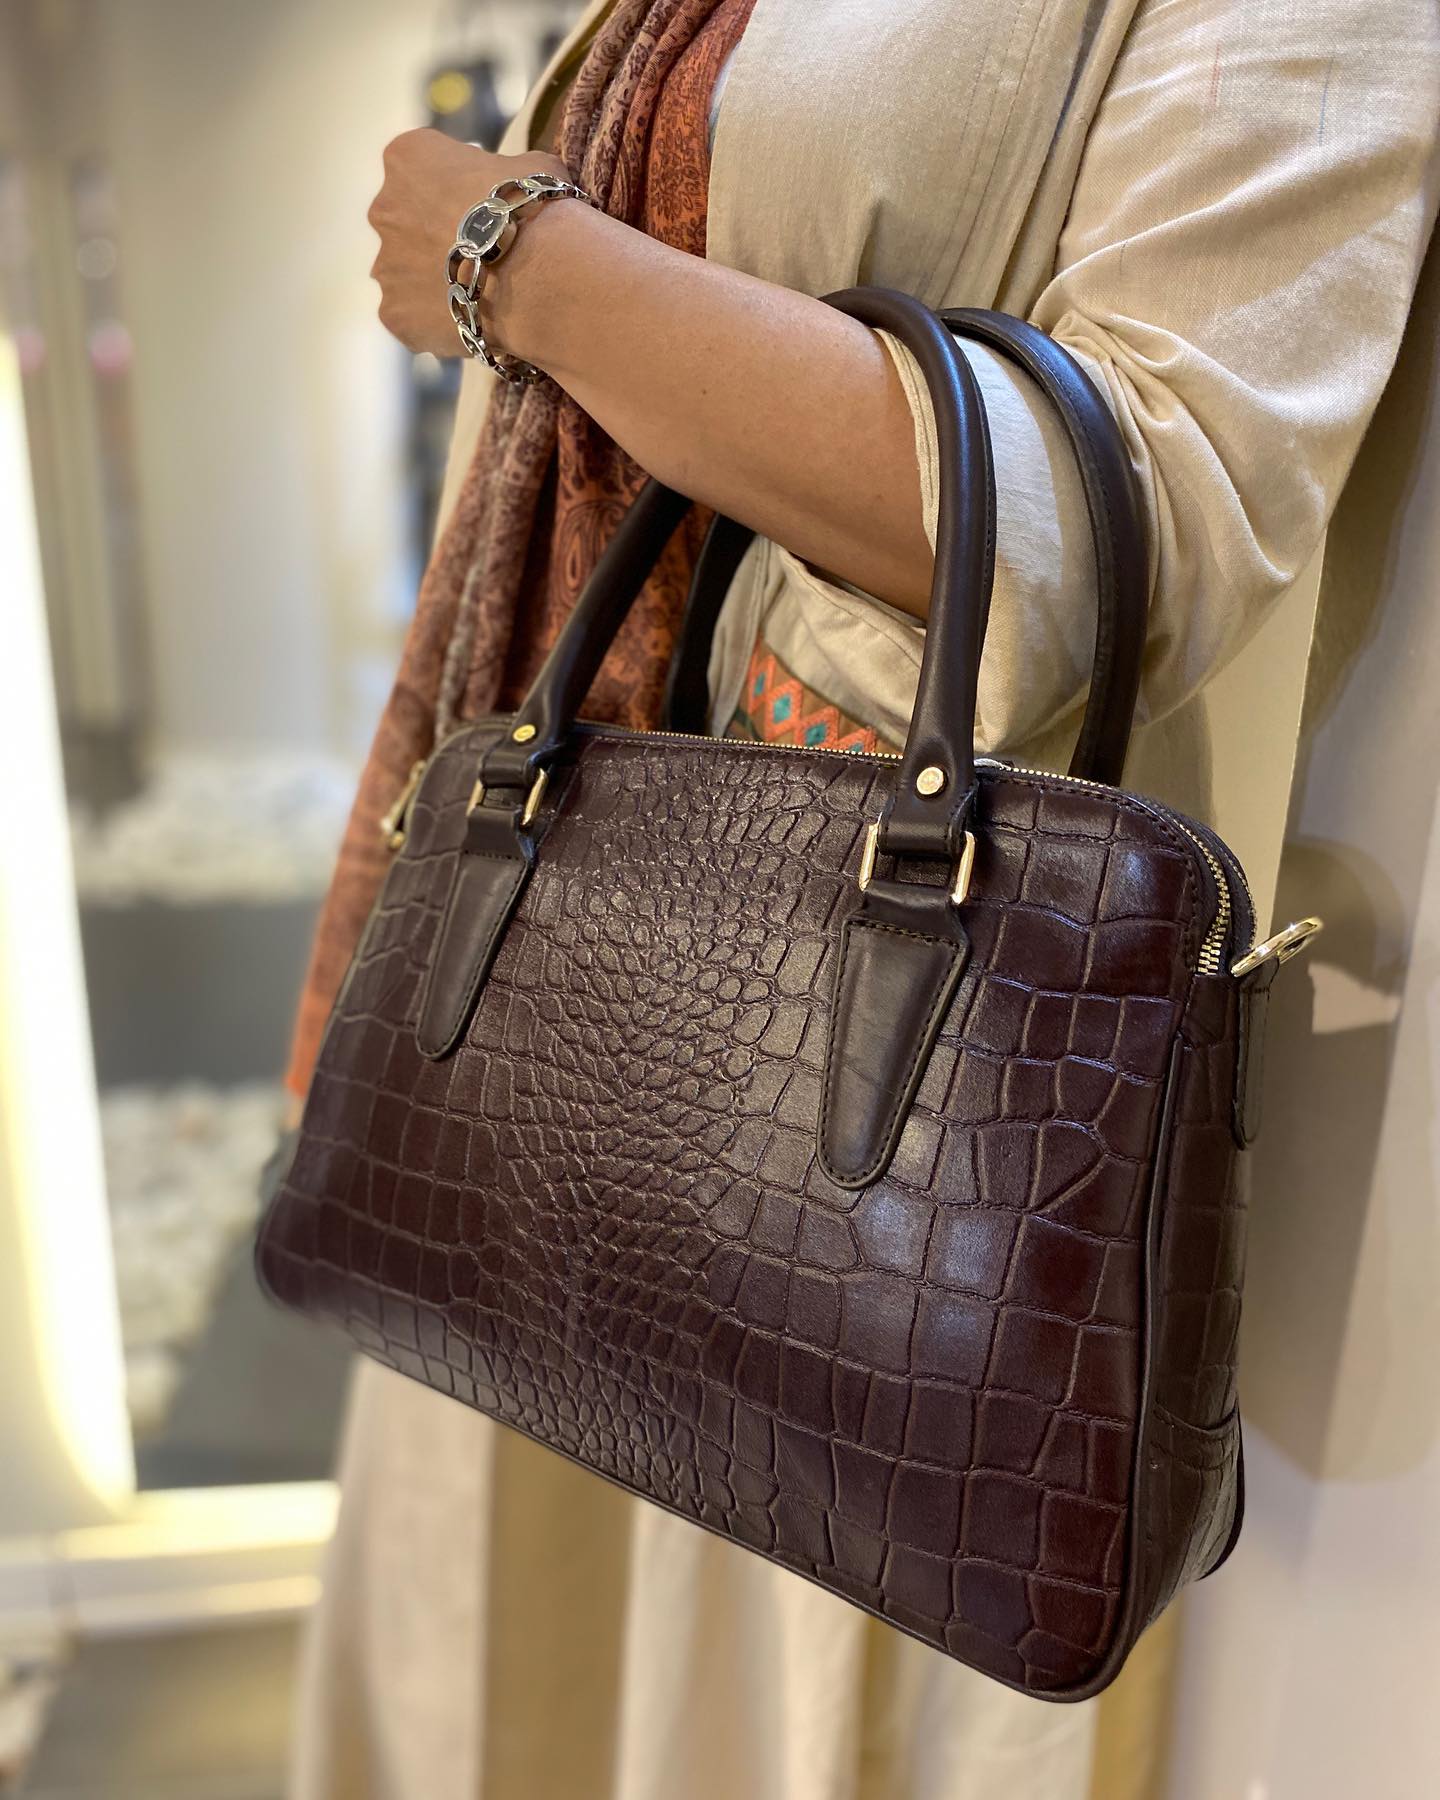 LeatherLuxe handbag for girls